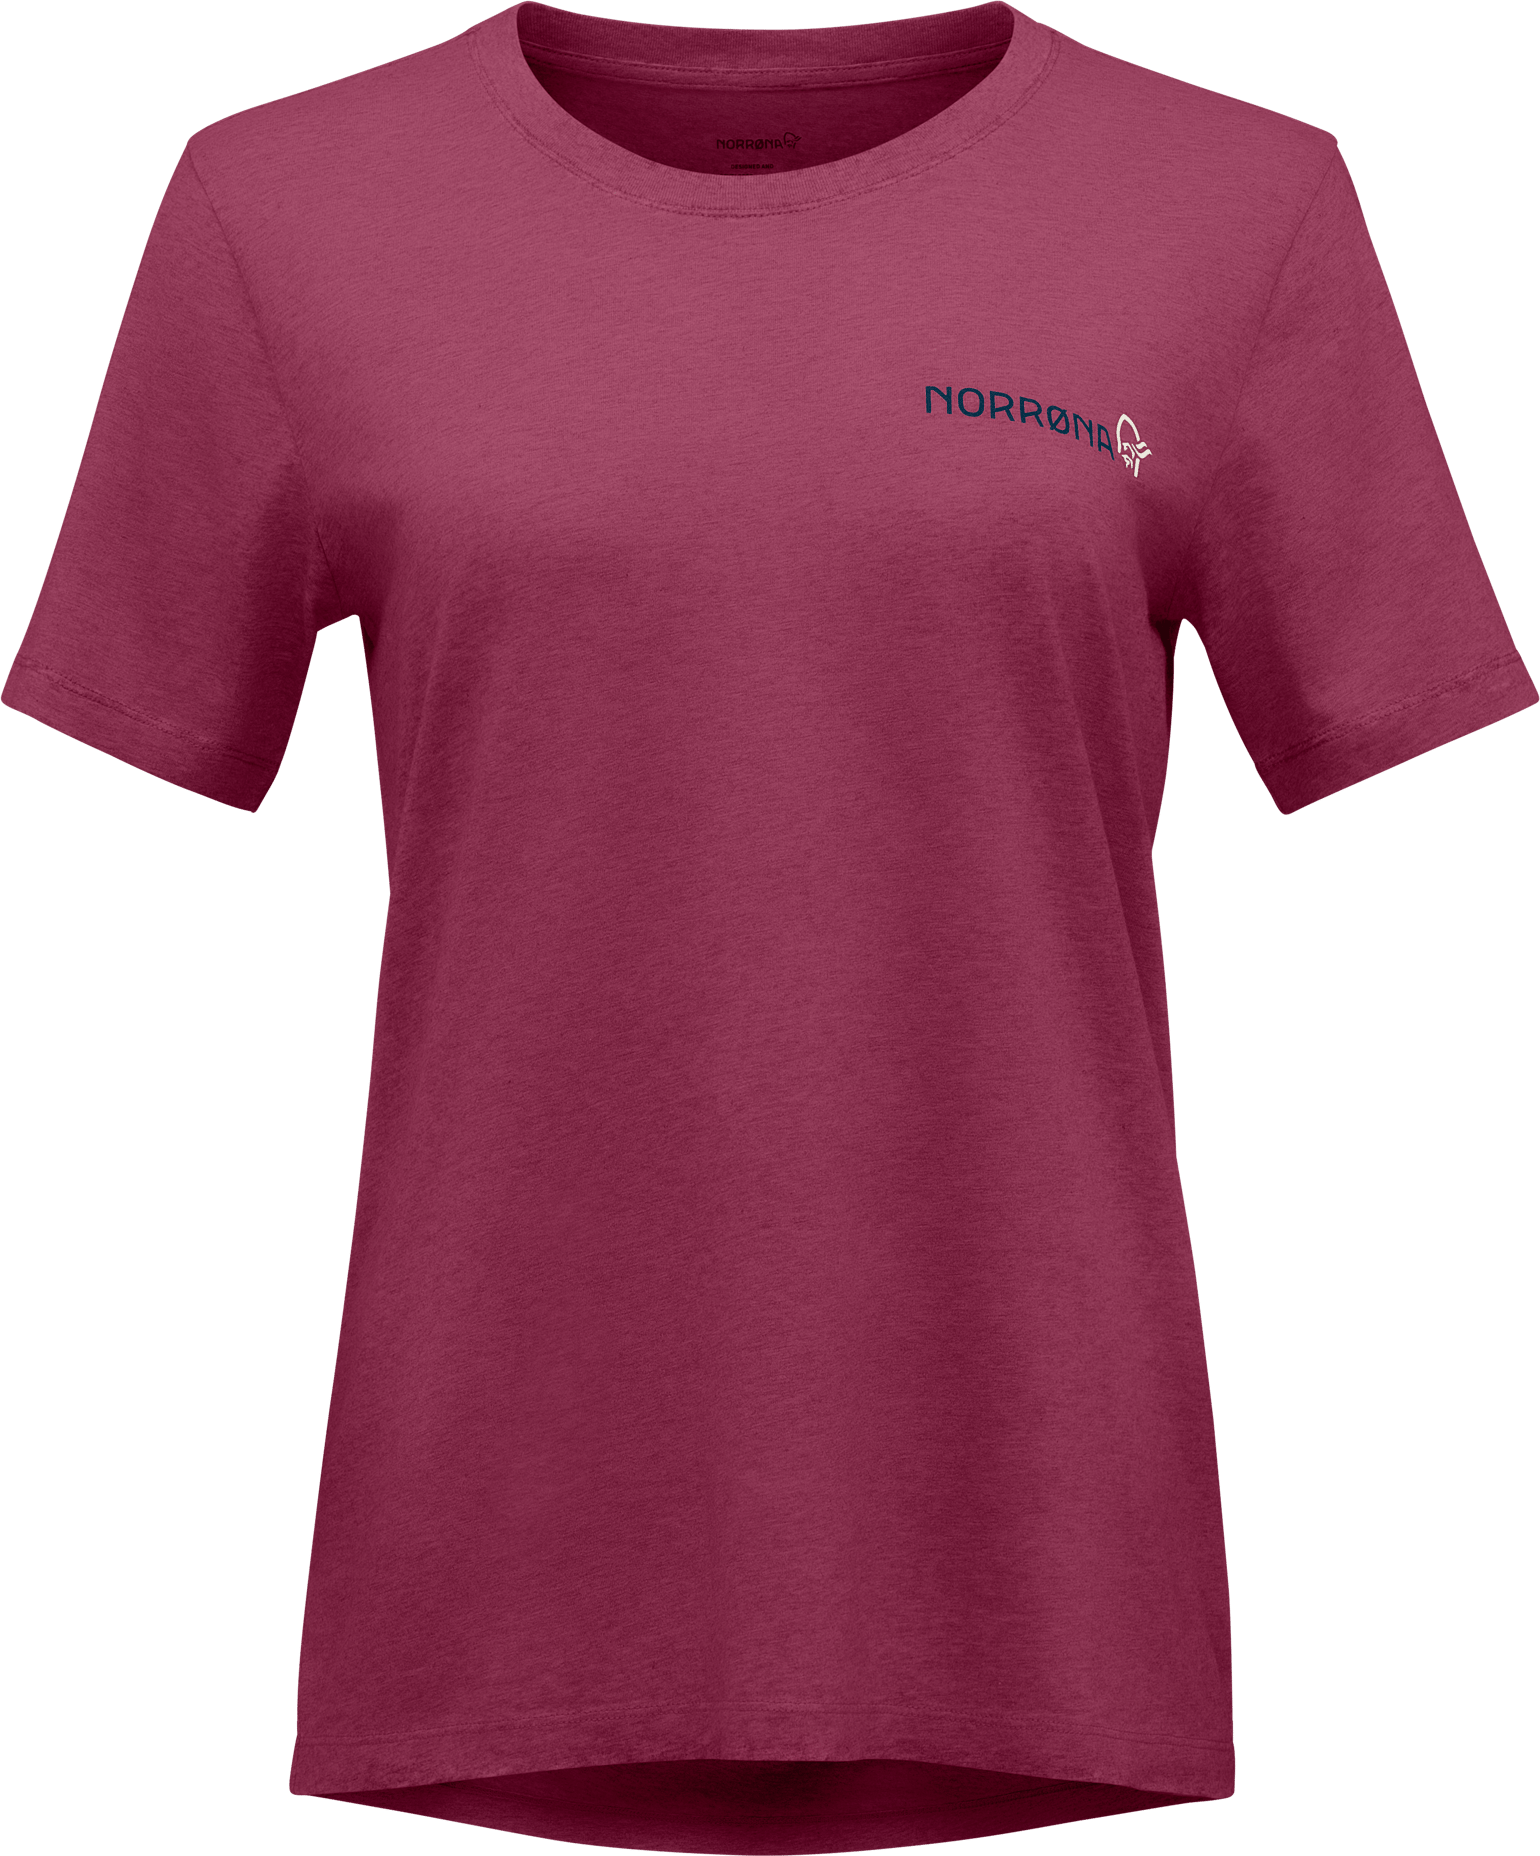 Norrøna Women's /29 Cotton Duotone T-Shirt Violet Quartz